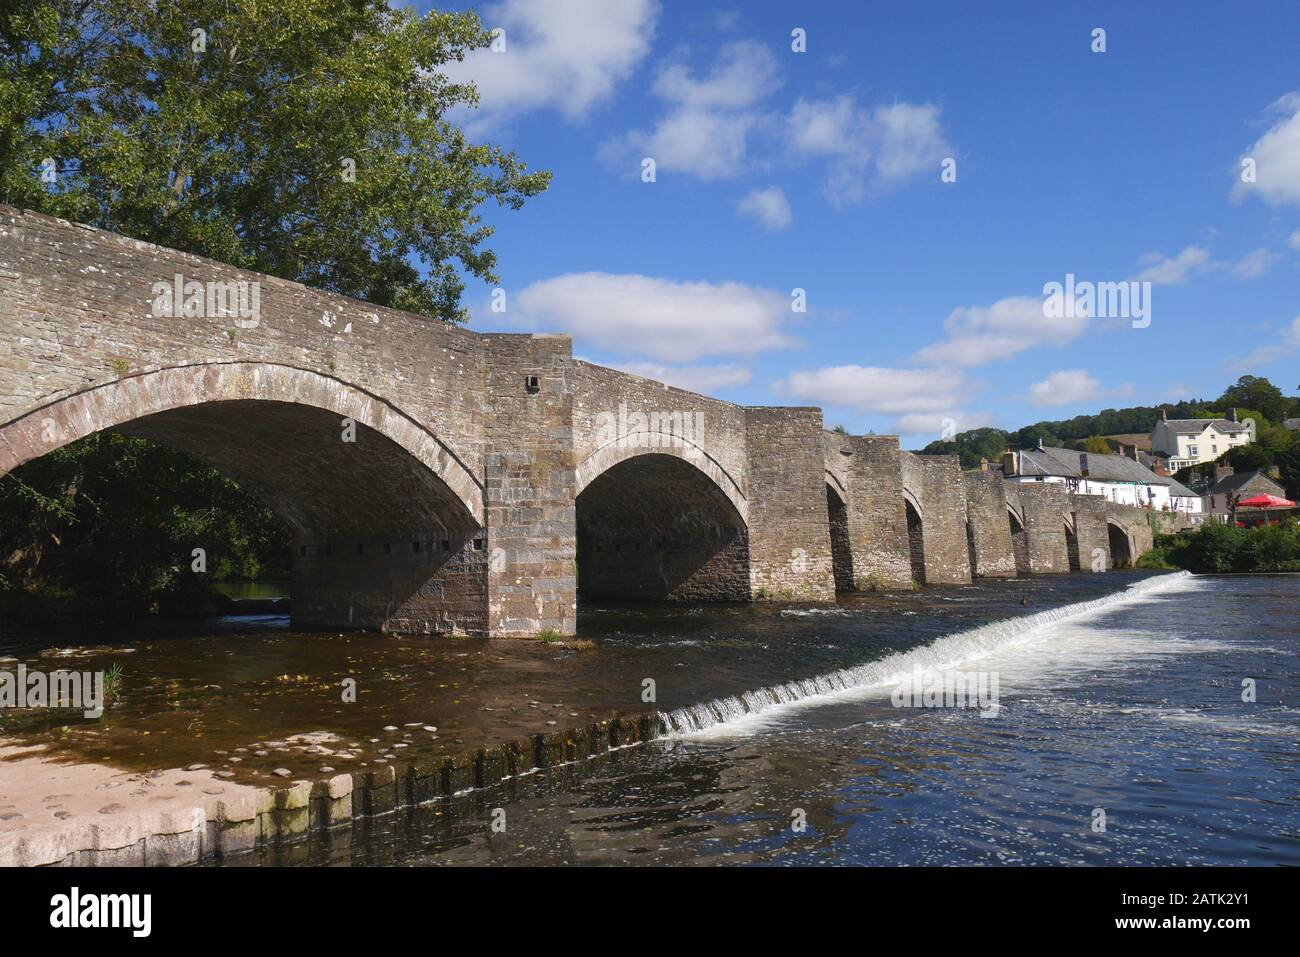 Il ponte di grado uno elencato 18th secolo, che si erge sopra un weir, attraverso il fiume Usk, Crickhowell, Powys, Galles, Regno Unito Foto Stock